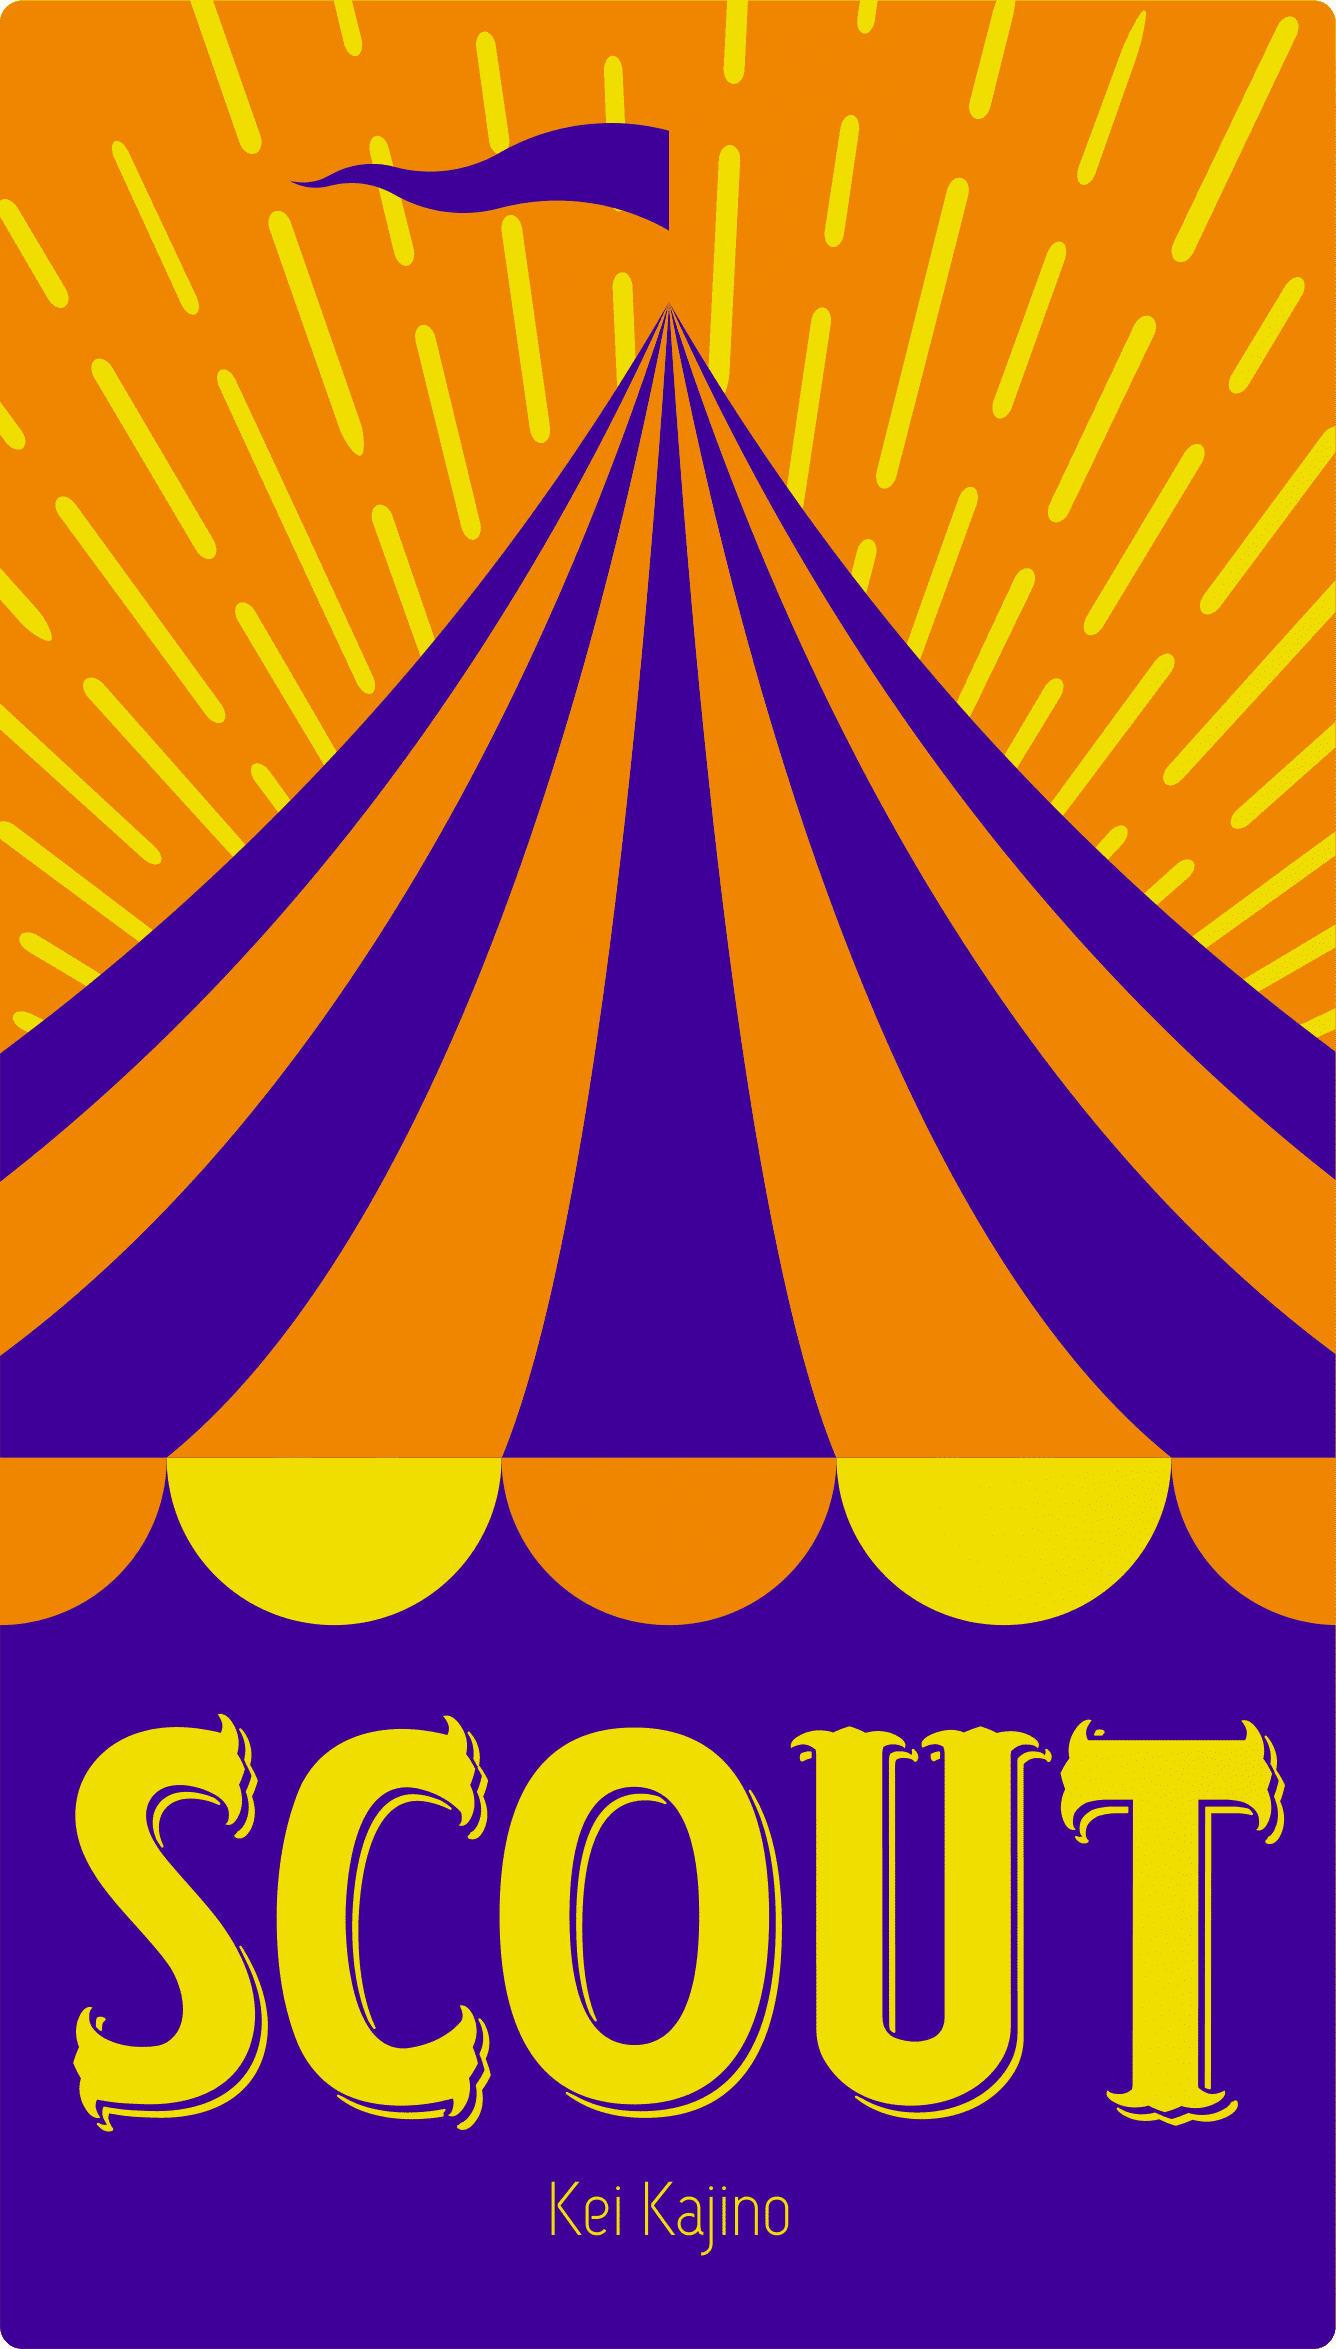 scout box art